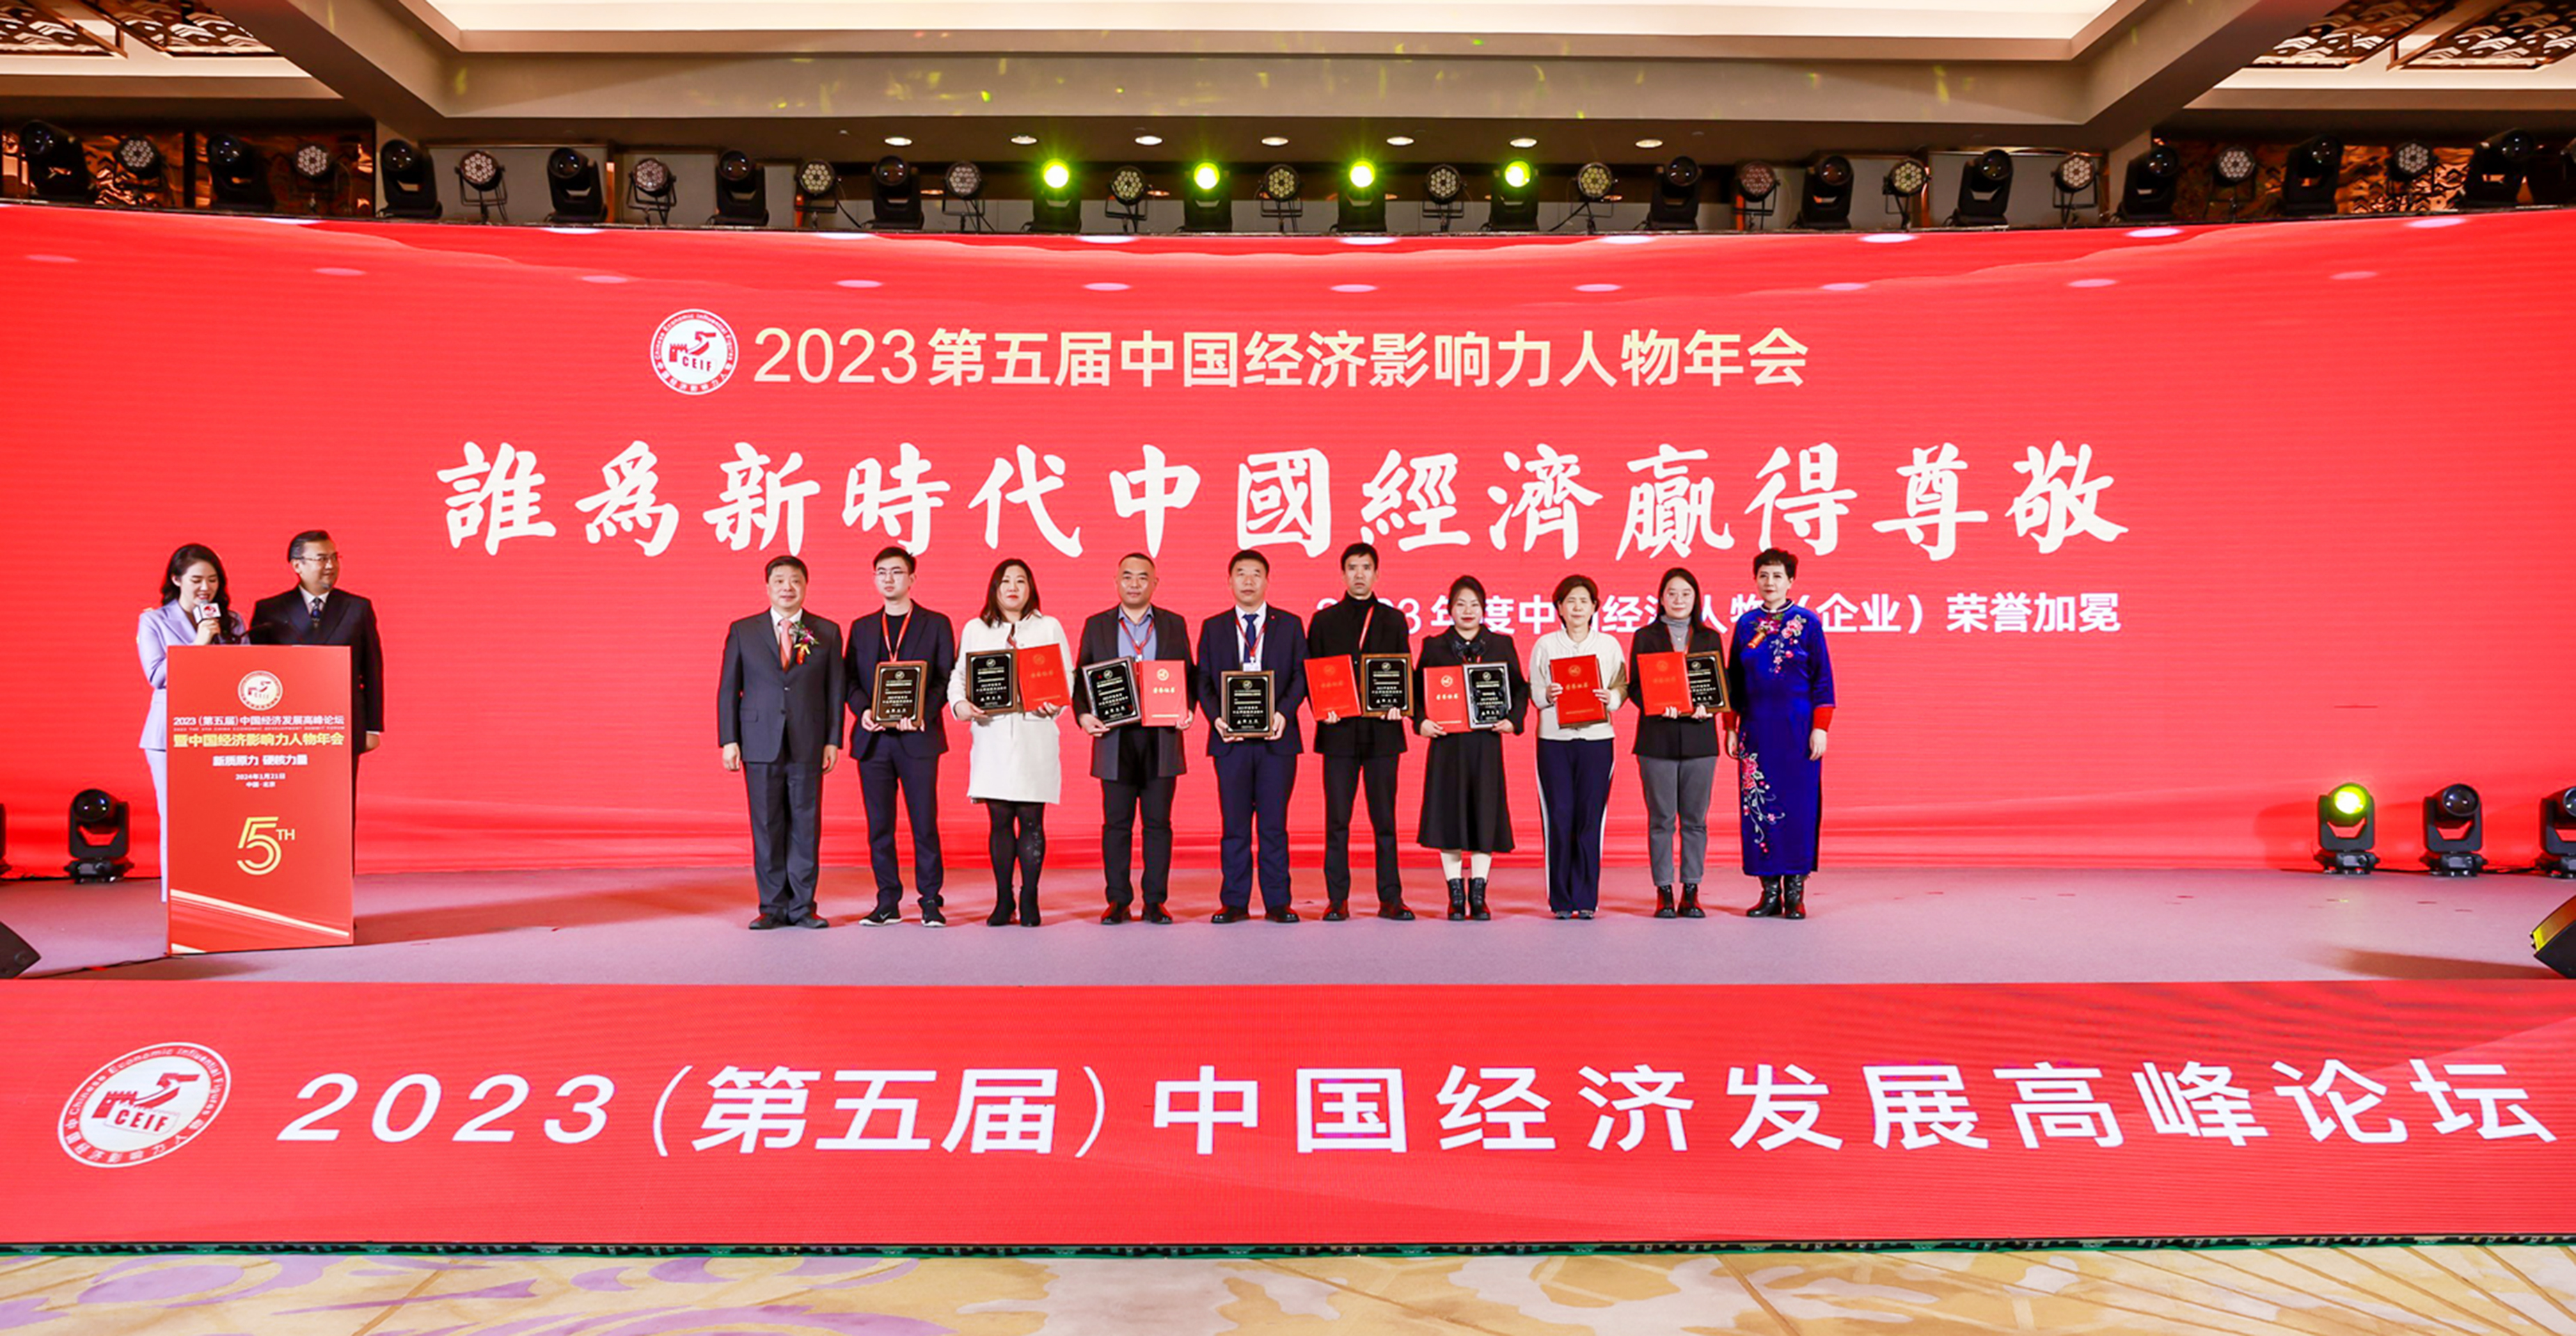 奥创通风设备董事长李蜜南受邀出席2023中国经济影响力人物年会